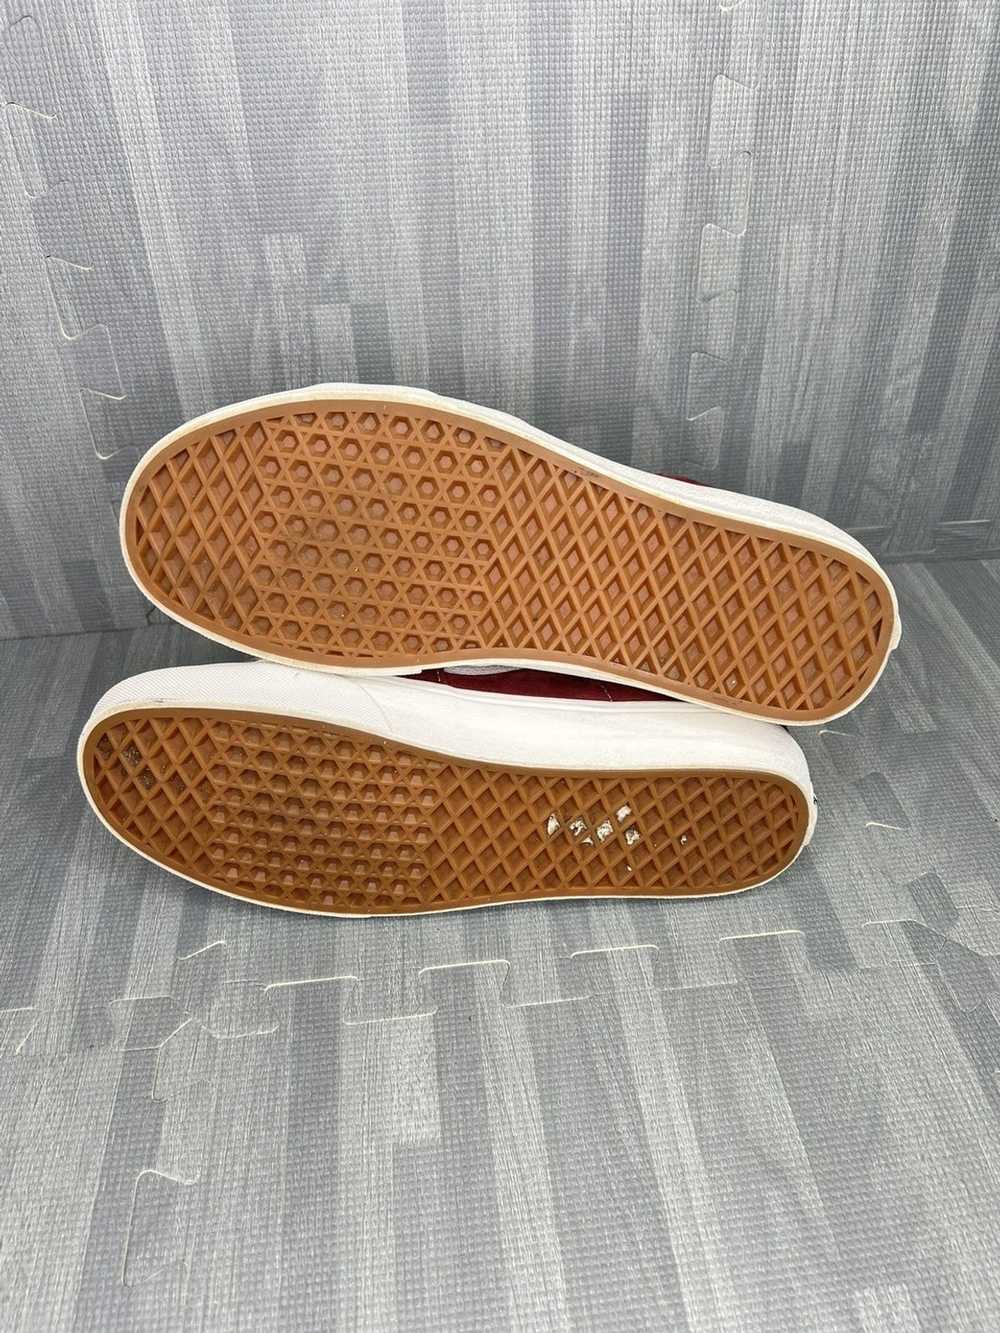 Vans VANS SK8-HI Shoes Burgundy Suede W 10 / M 8.5 - image 7